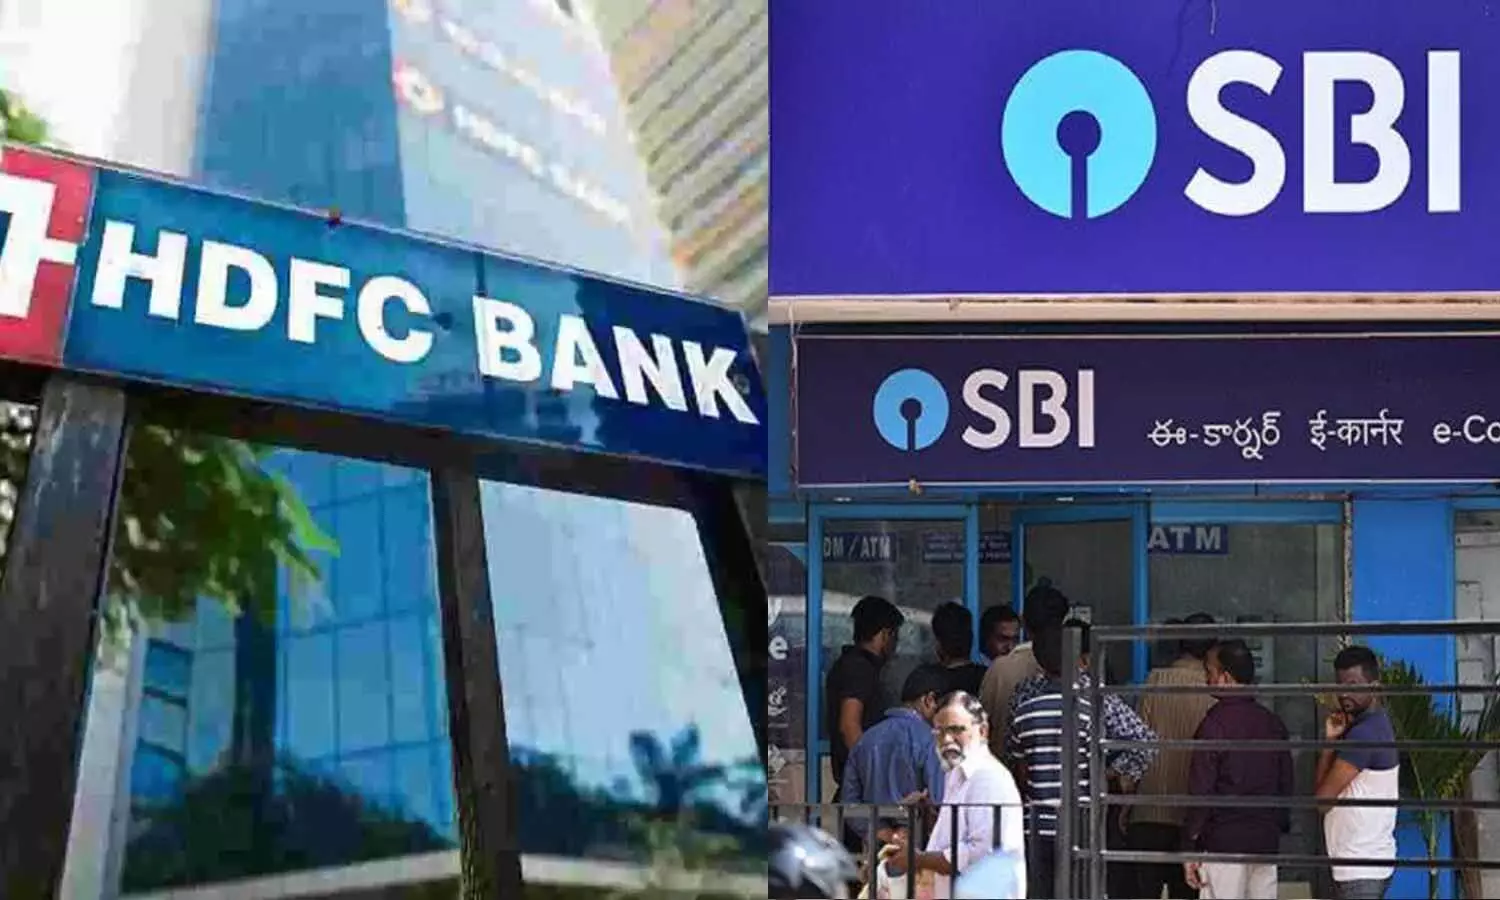 HDFC-SBI बैंकों की डिजीटल बैंकिंग सुविध शुक्रवार रात बाधित रहने वाली है।